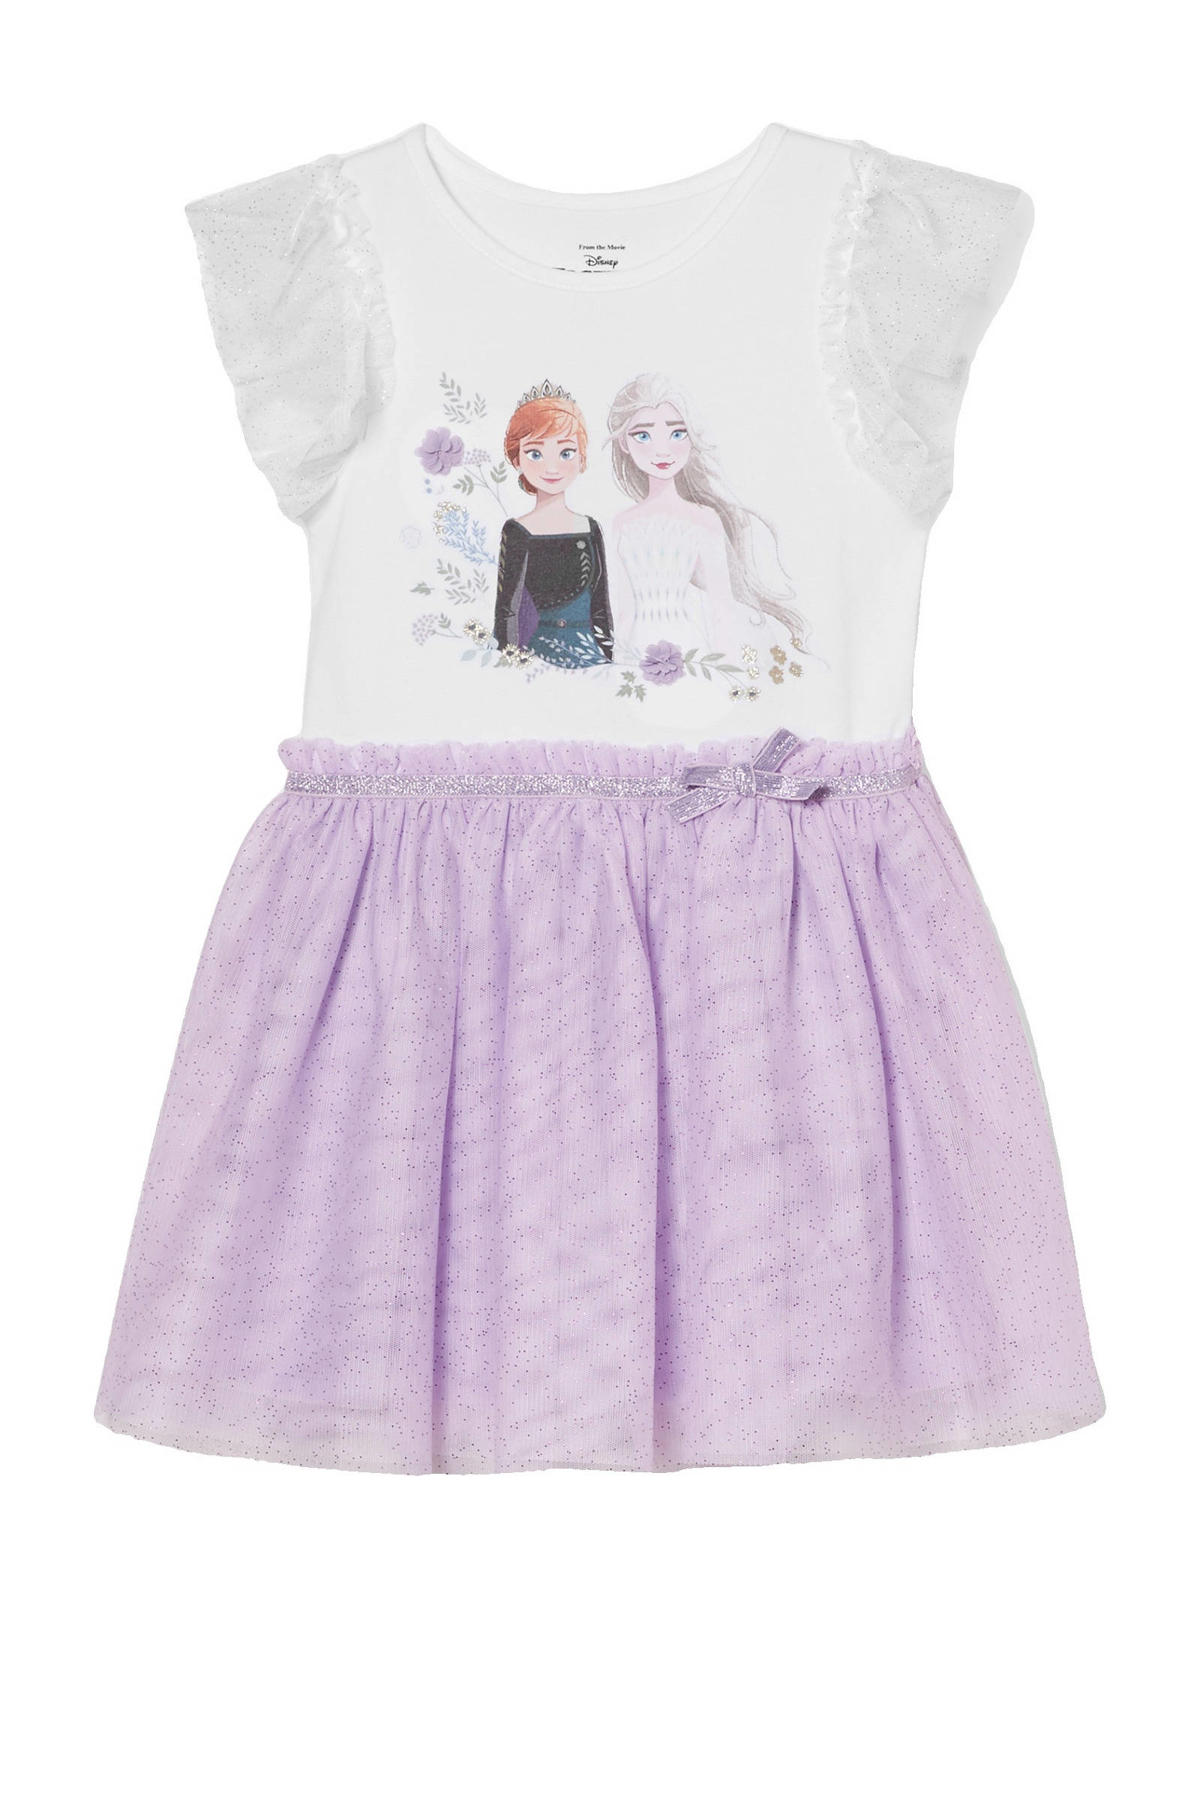 C&A Frozen Frozen Sister Forever jurk met printopdruk en glitters wit/lila wehkamp